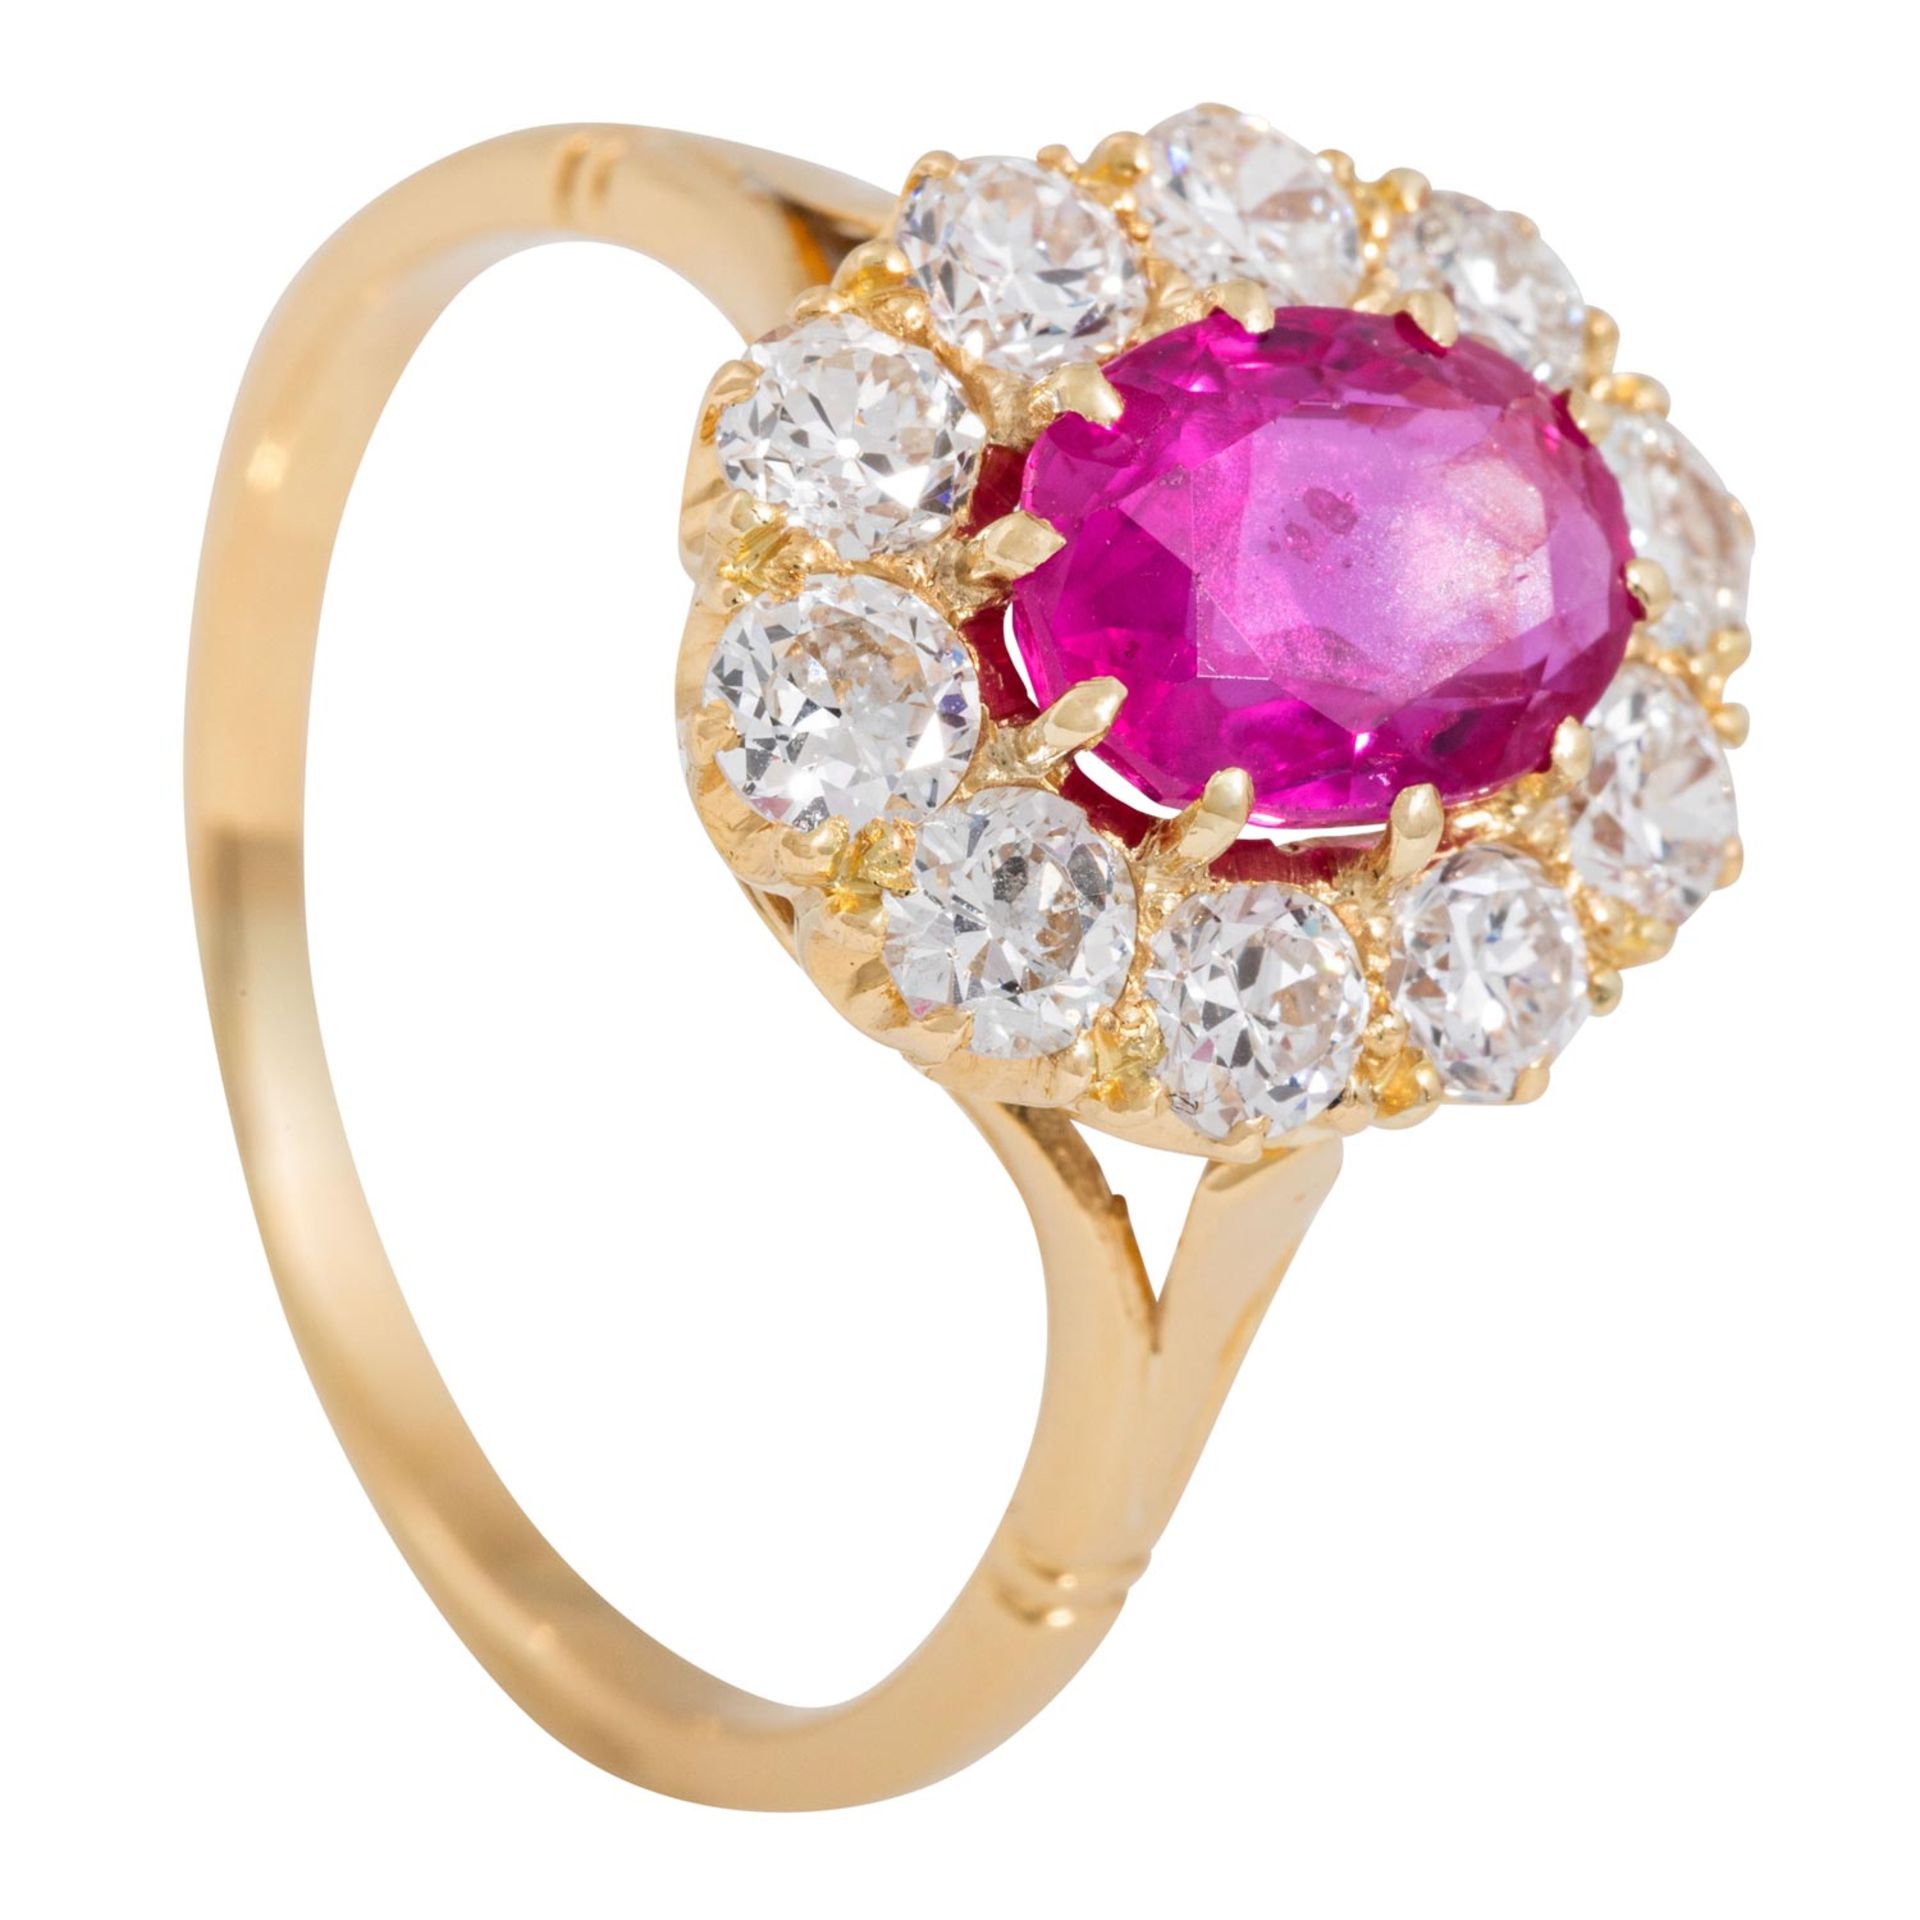 Ring mit pinkfarbenem Saphir und Altschliffdiamanten - Image 4 of 4